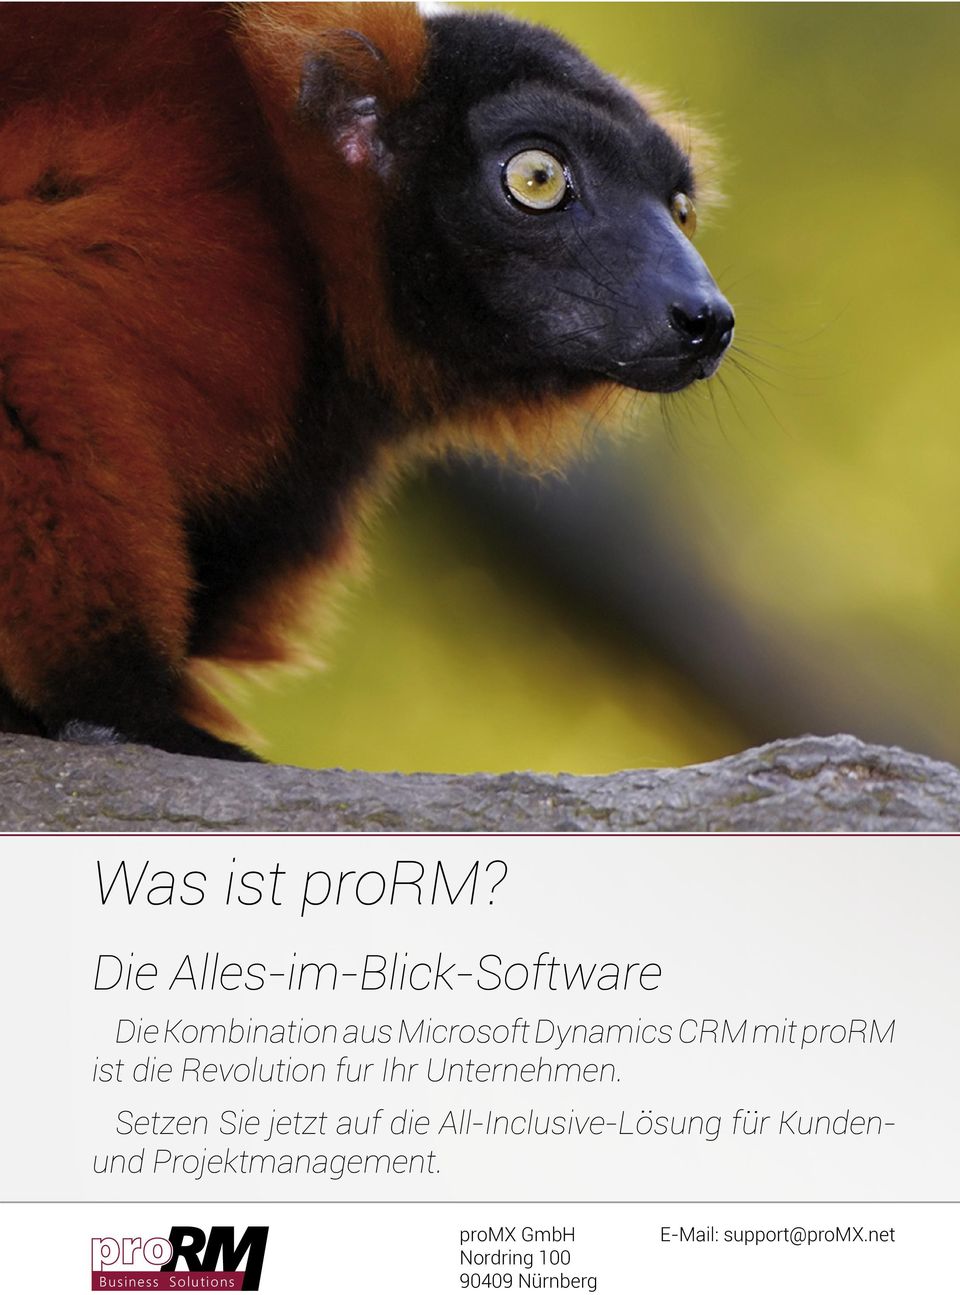 Microsoft Dynamics CRM mit prorm ist die Revolution fur Ihr Unternehmen.